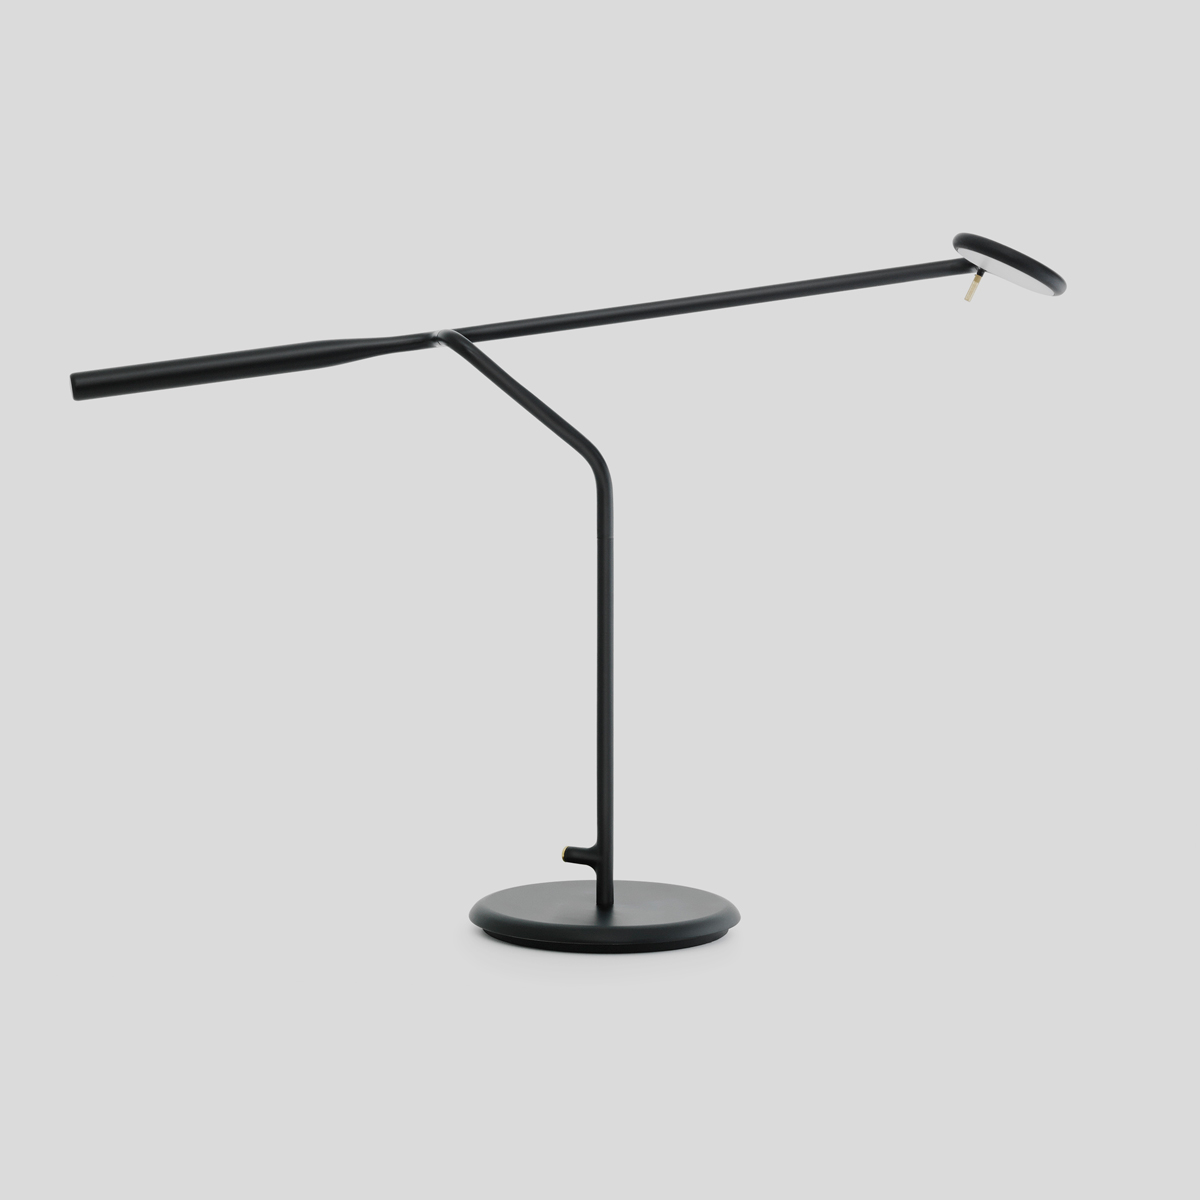 Deze elegante leeslamp is zeer wendbaar als hij is. Je kunt de moderne tafellamp alle kanten opdraaien.